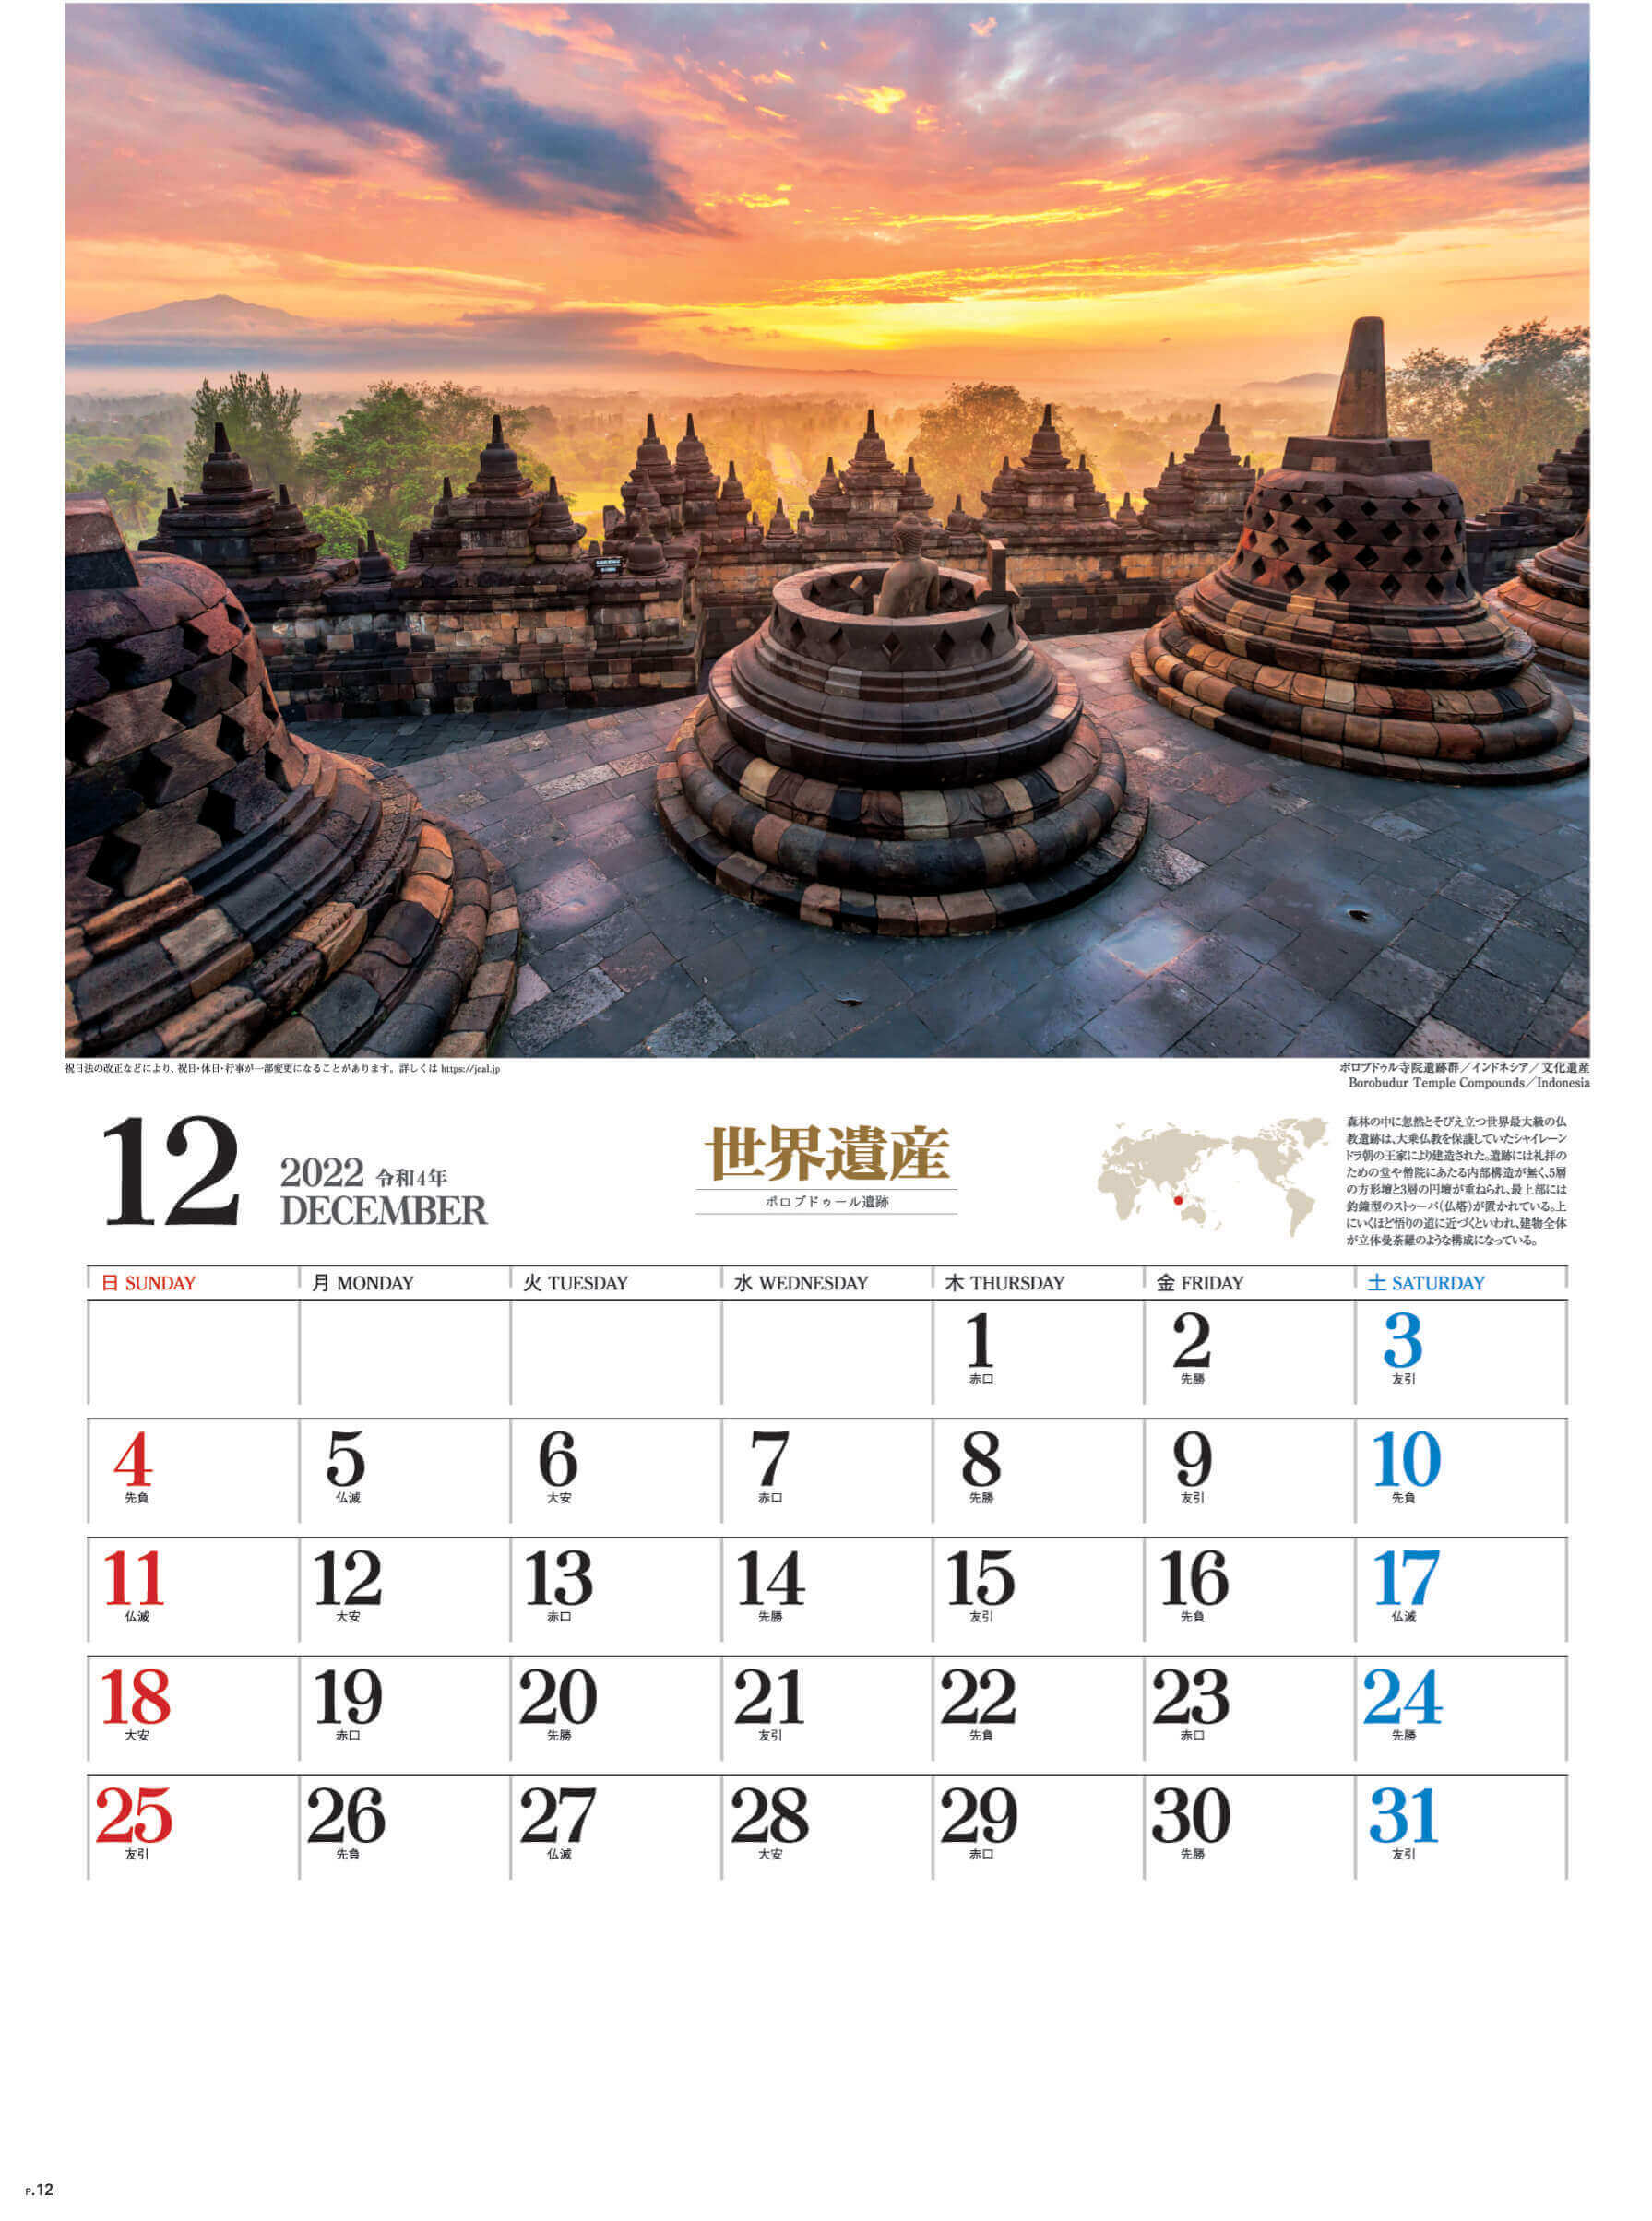 12月 ボロブドゥール インドネシア ユネスコ世界遺産 2022年カレンダーの画像